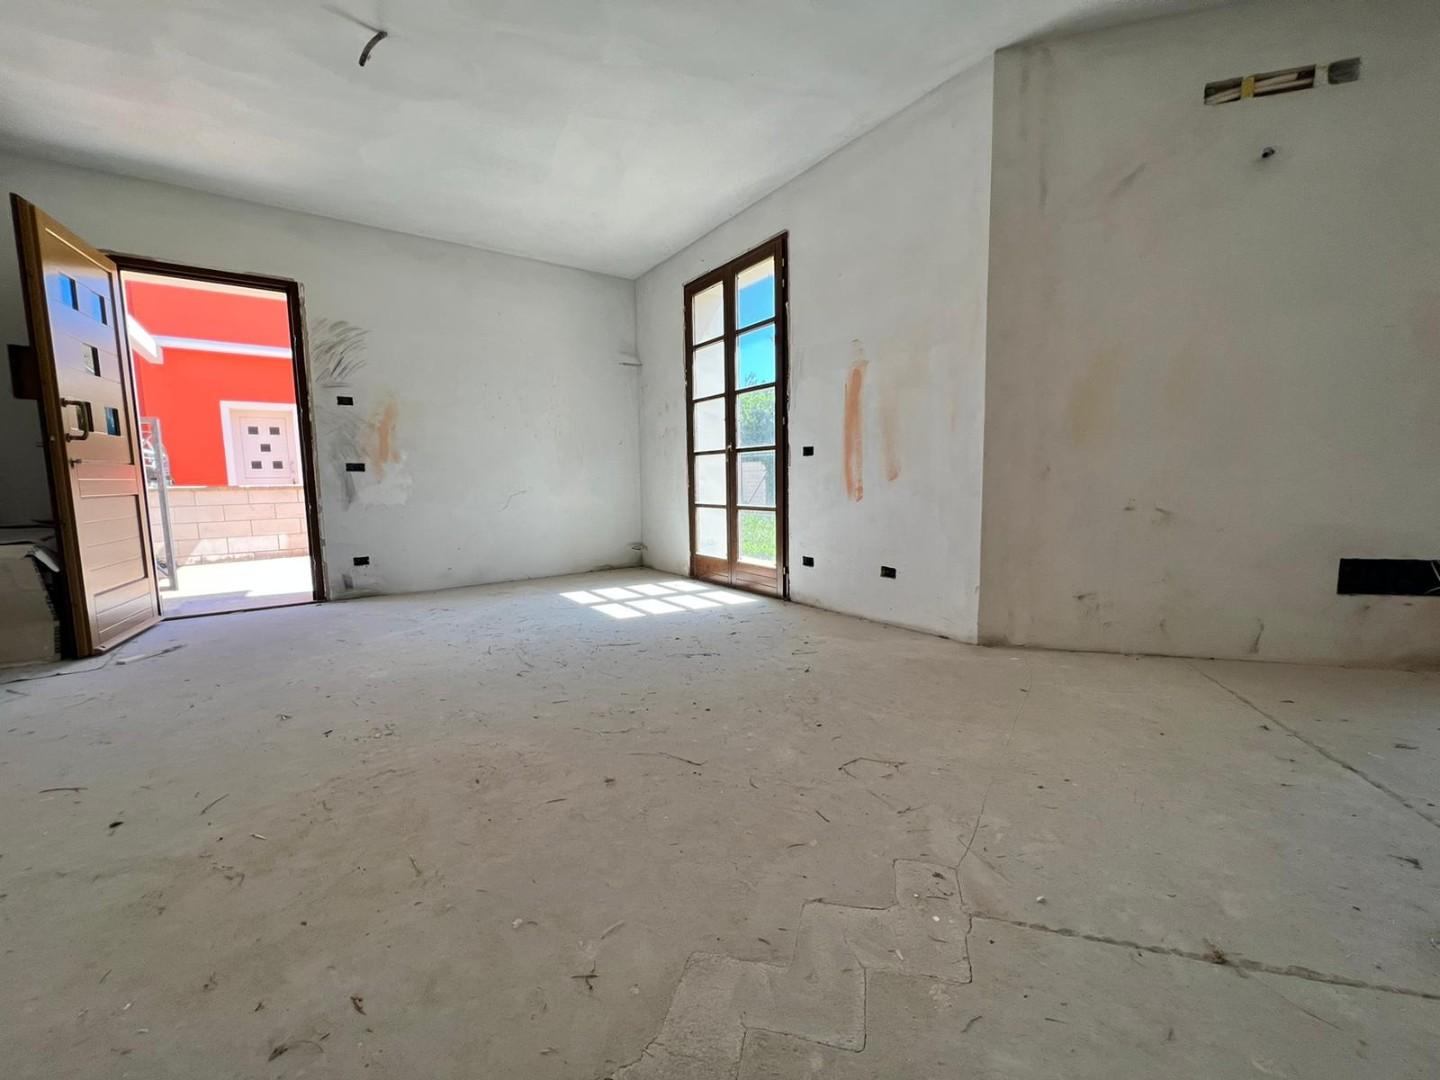 Villetta a schiera angolare in vendita a Bientina | Agenzia Toscana Immobiliare